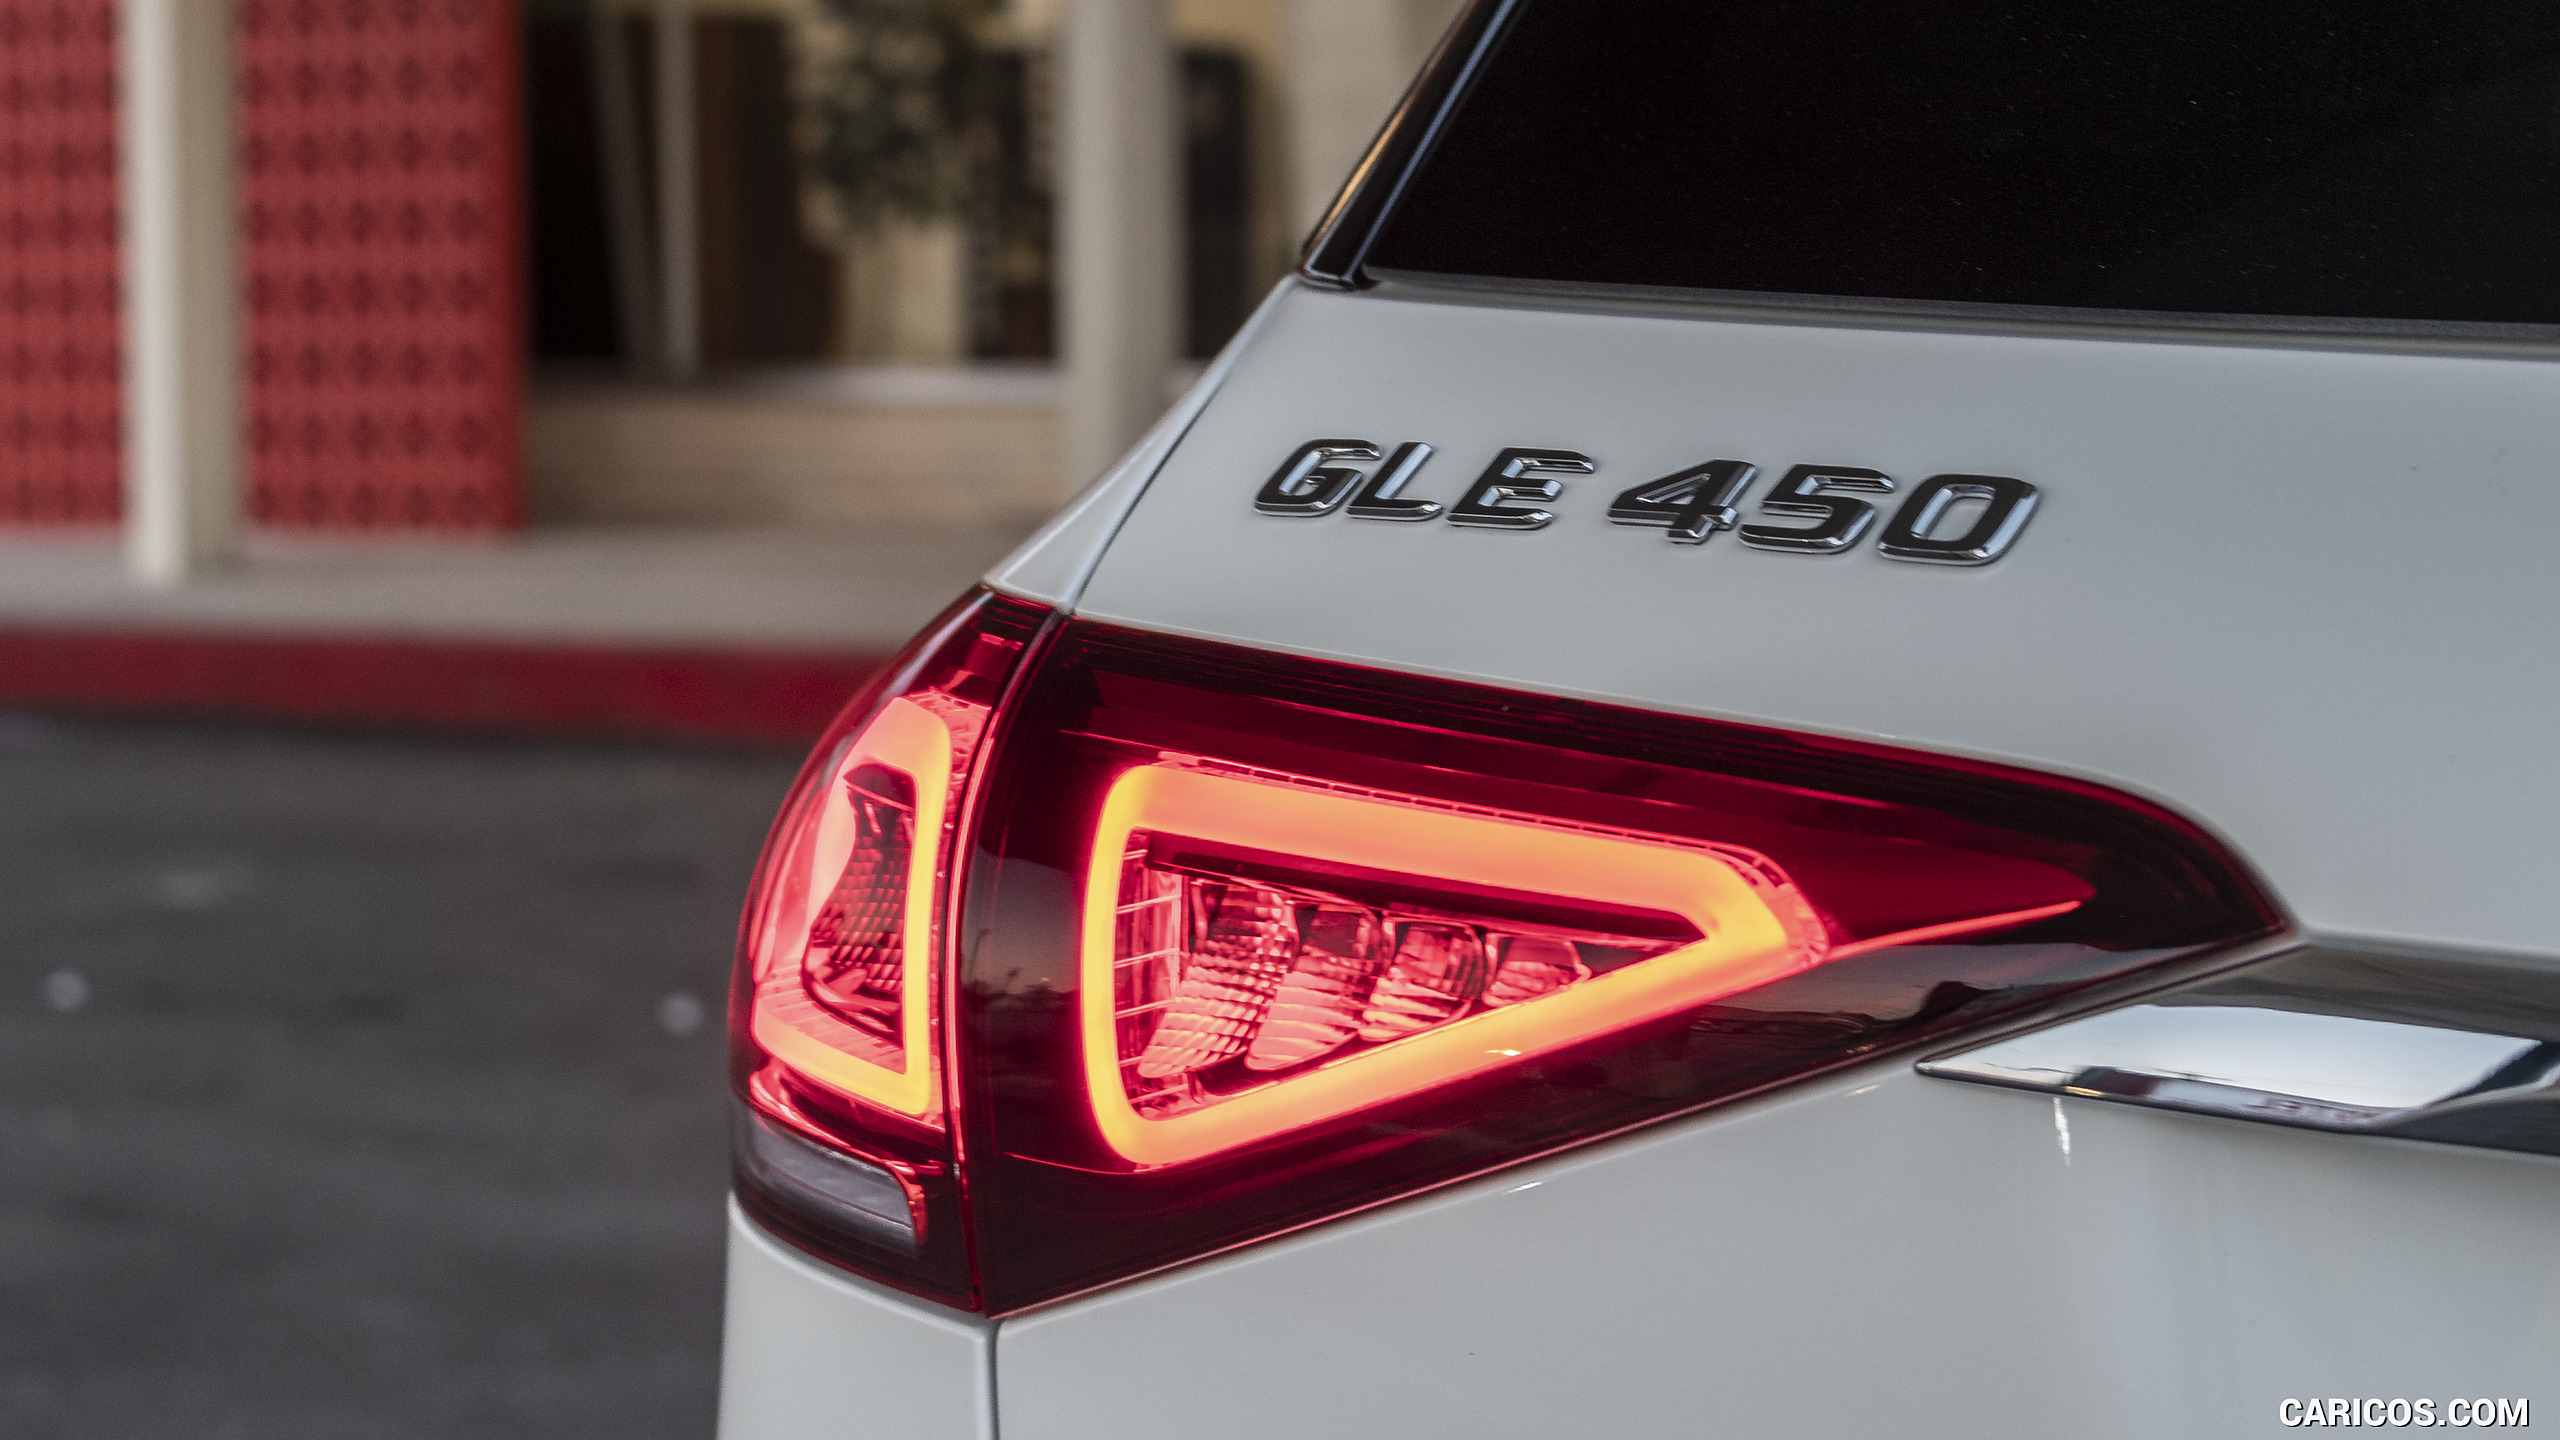 2020 Mercedes-Benz GLE 450 4MATIC (Color: Designo Diamond White Bright; US-Spec) - Tail Light, #135 of 358